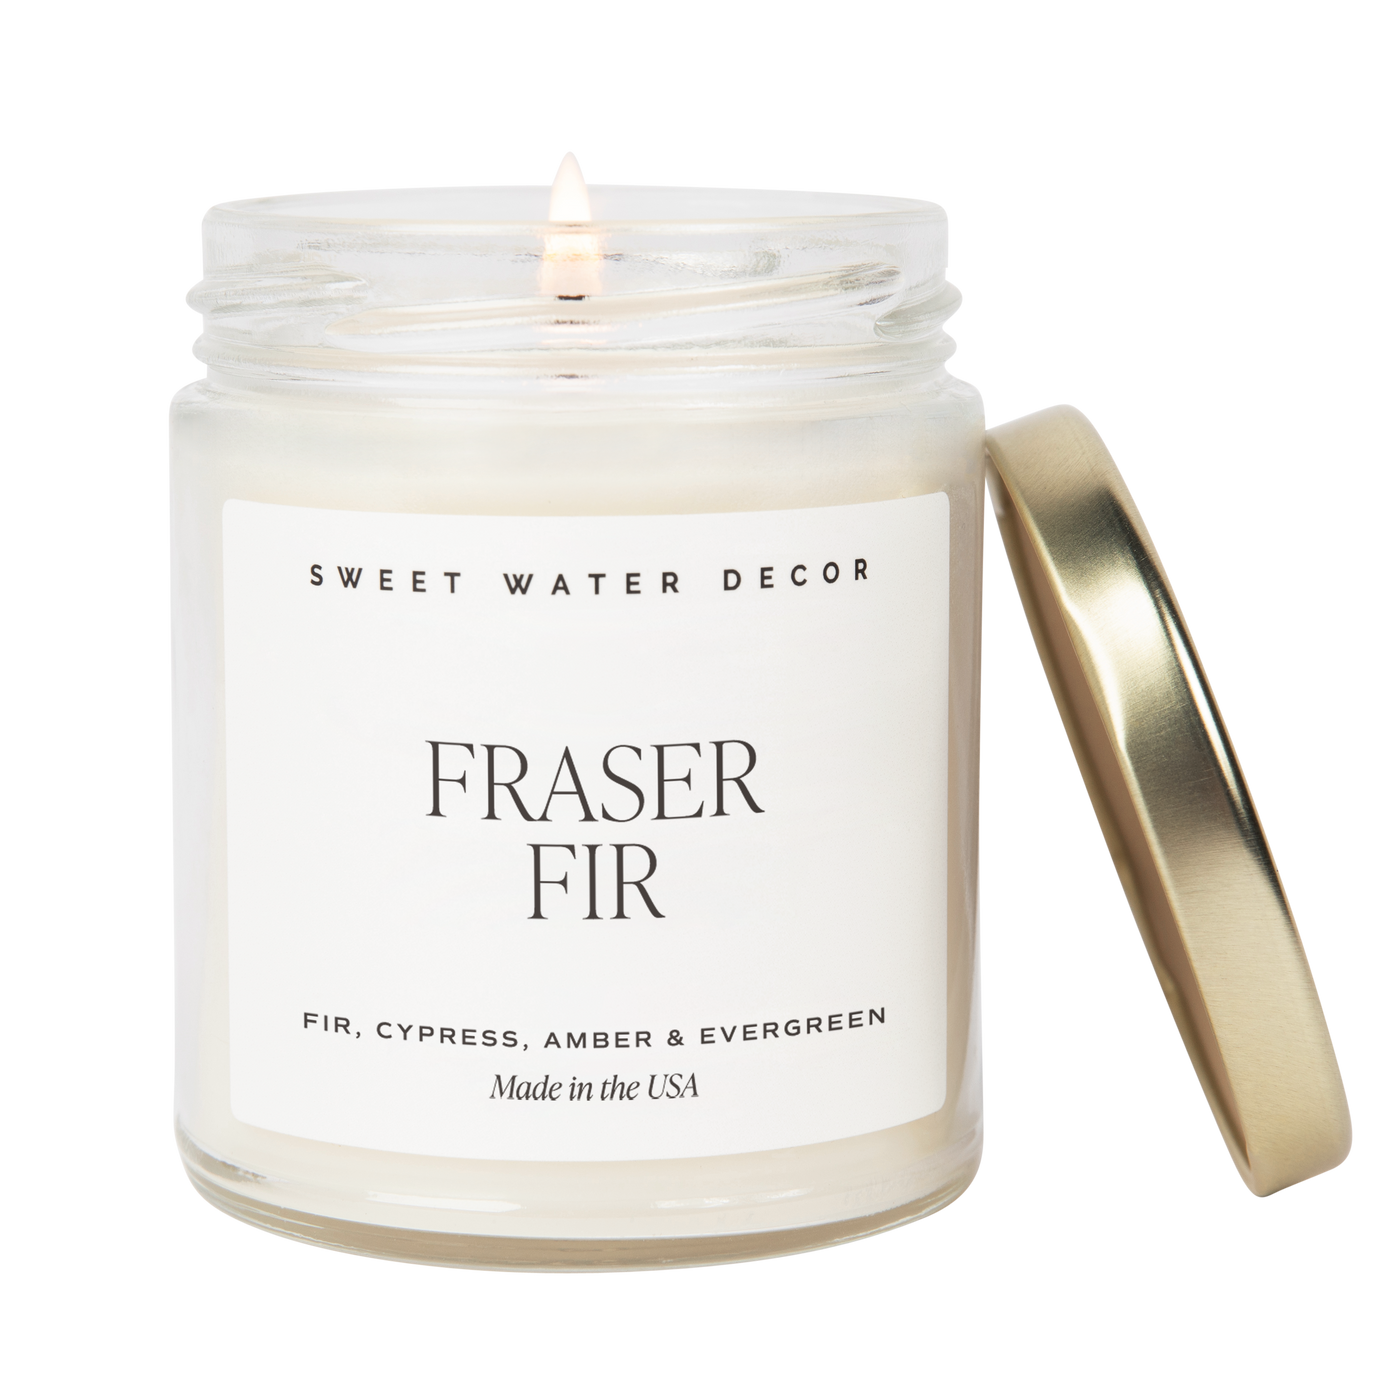 Fraser Fir Soy Candle - Clear Jar - 9 oz